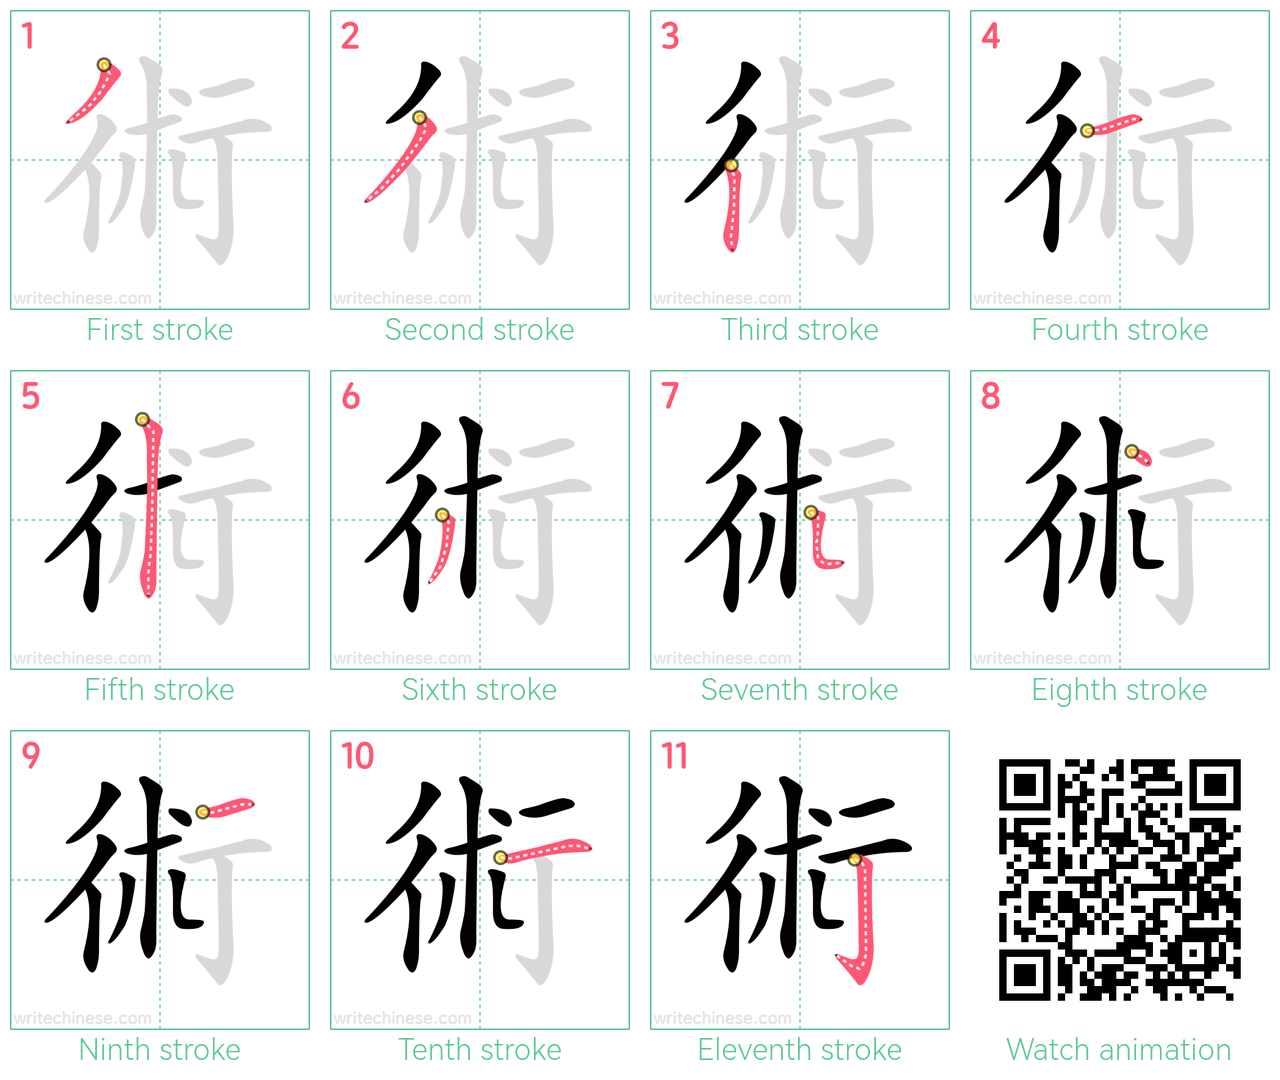 術 step-by-step stroke order diagrams